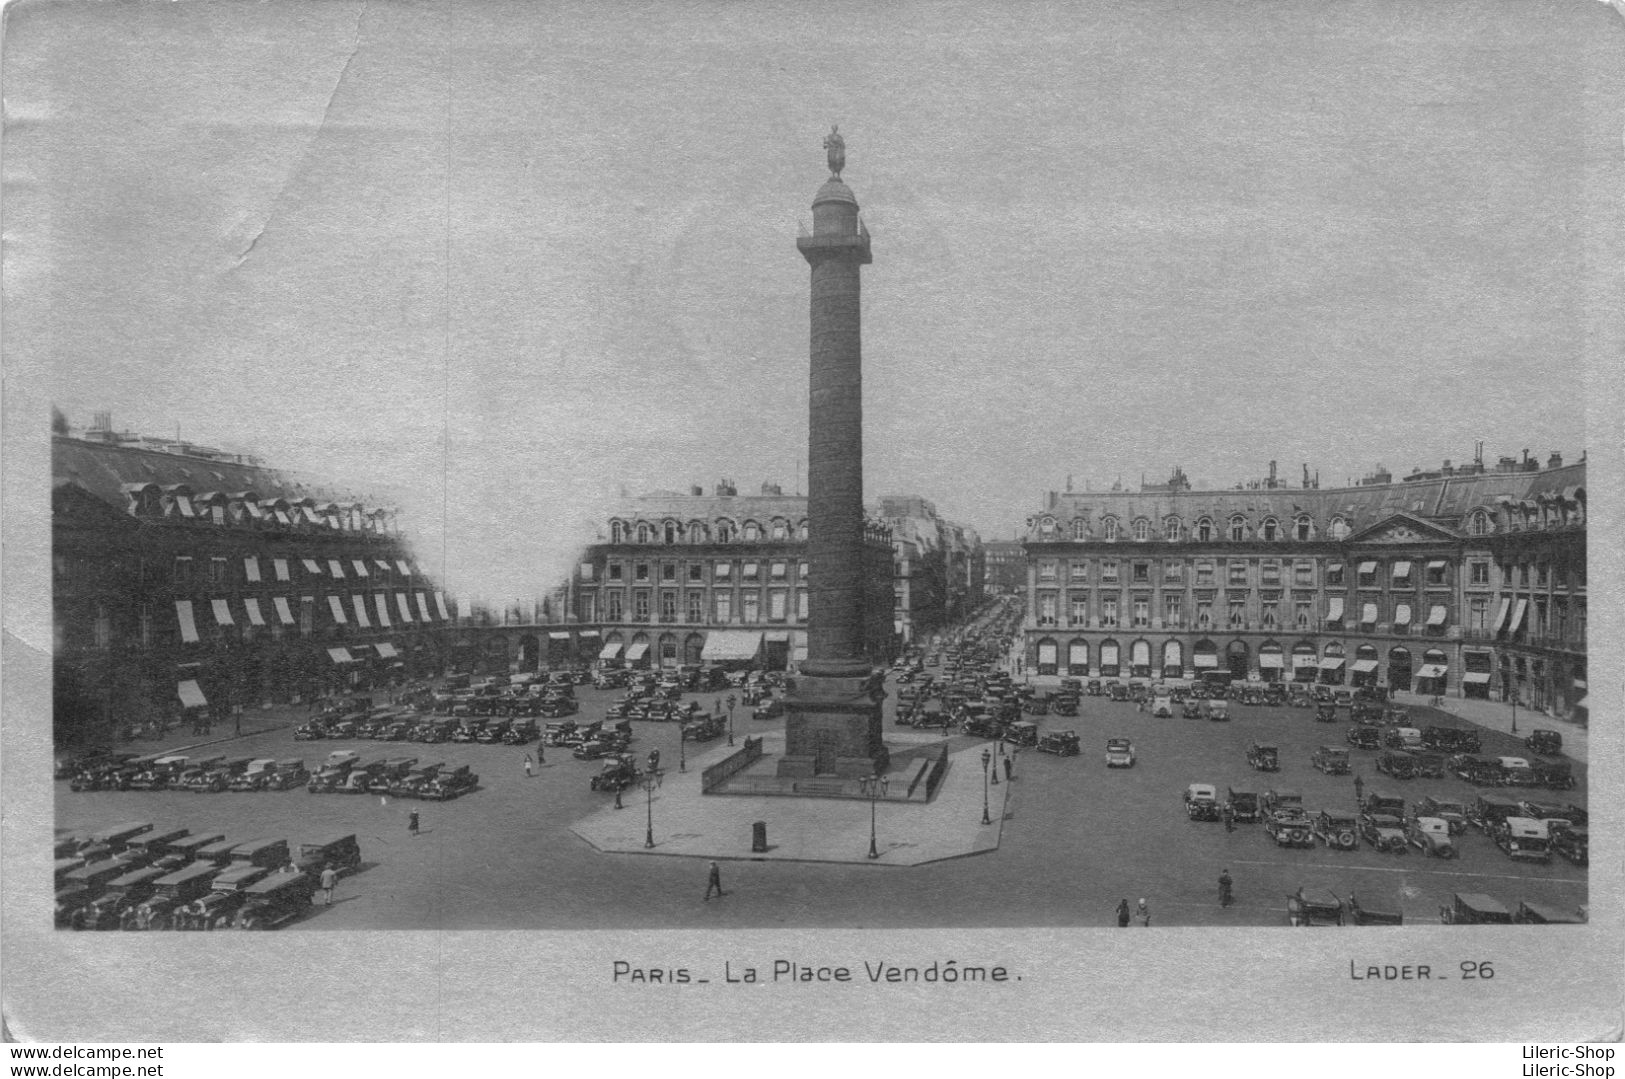 PARIS La Place Vendôme. LADER 26 - Places, Squares